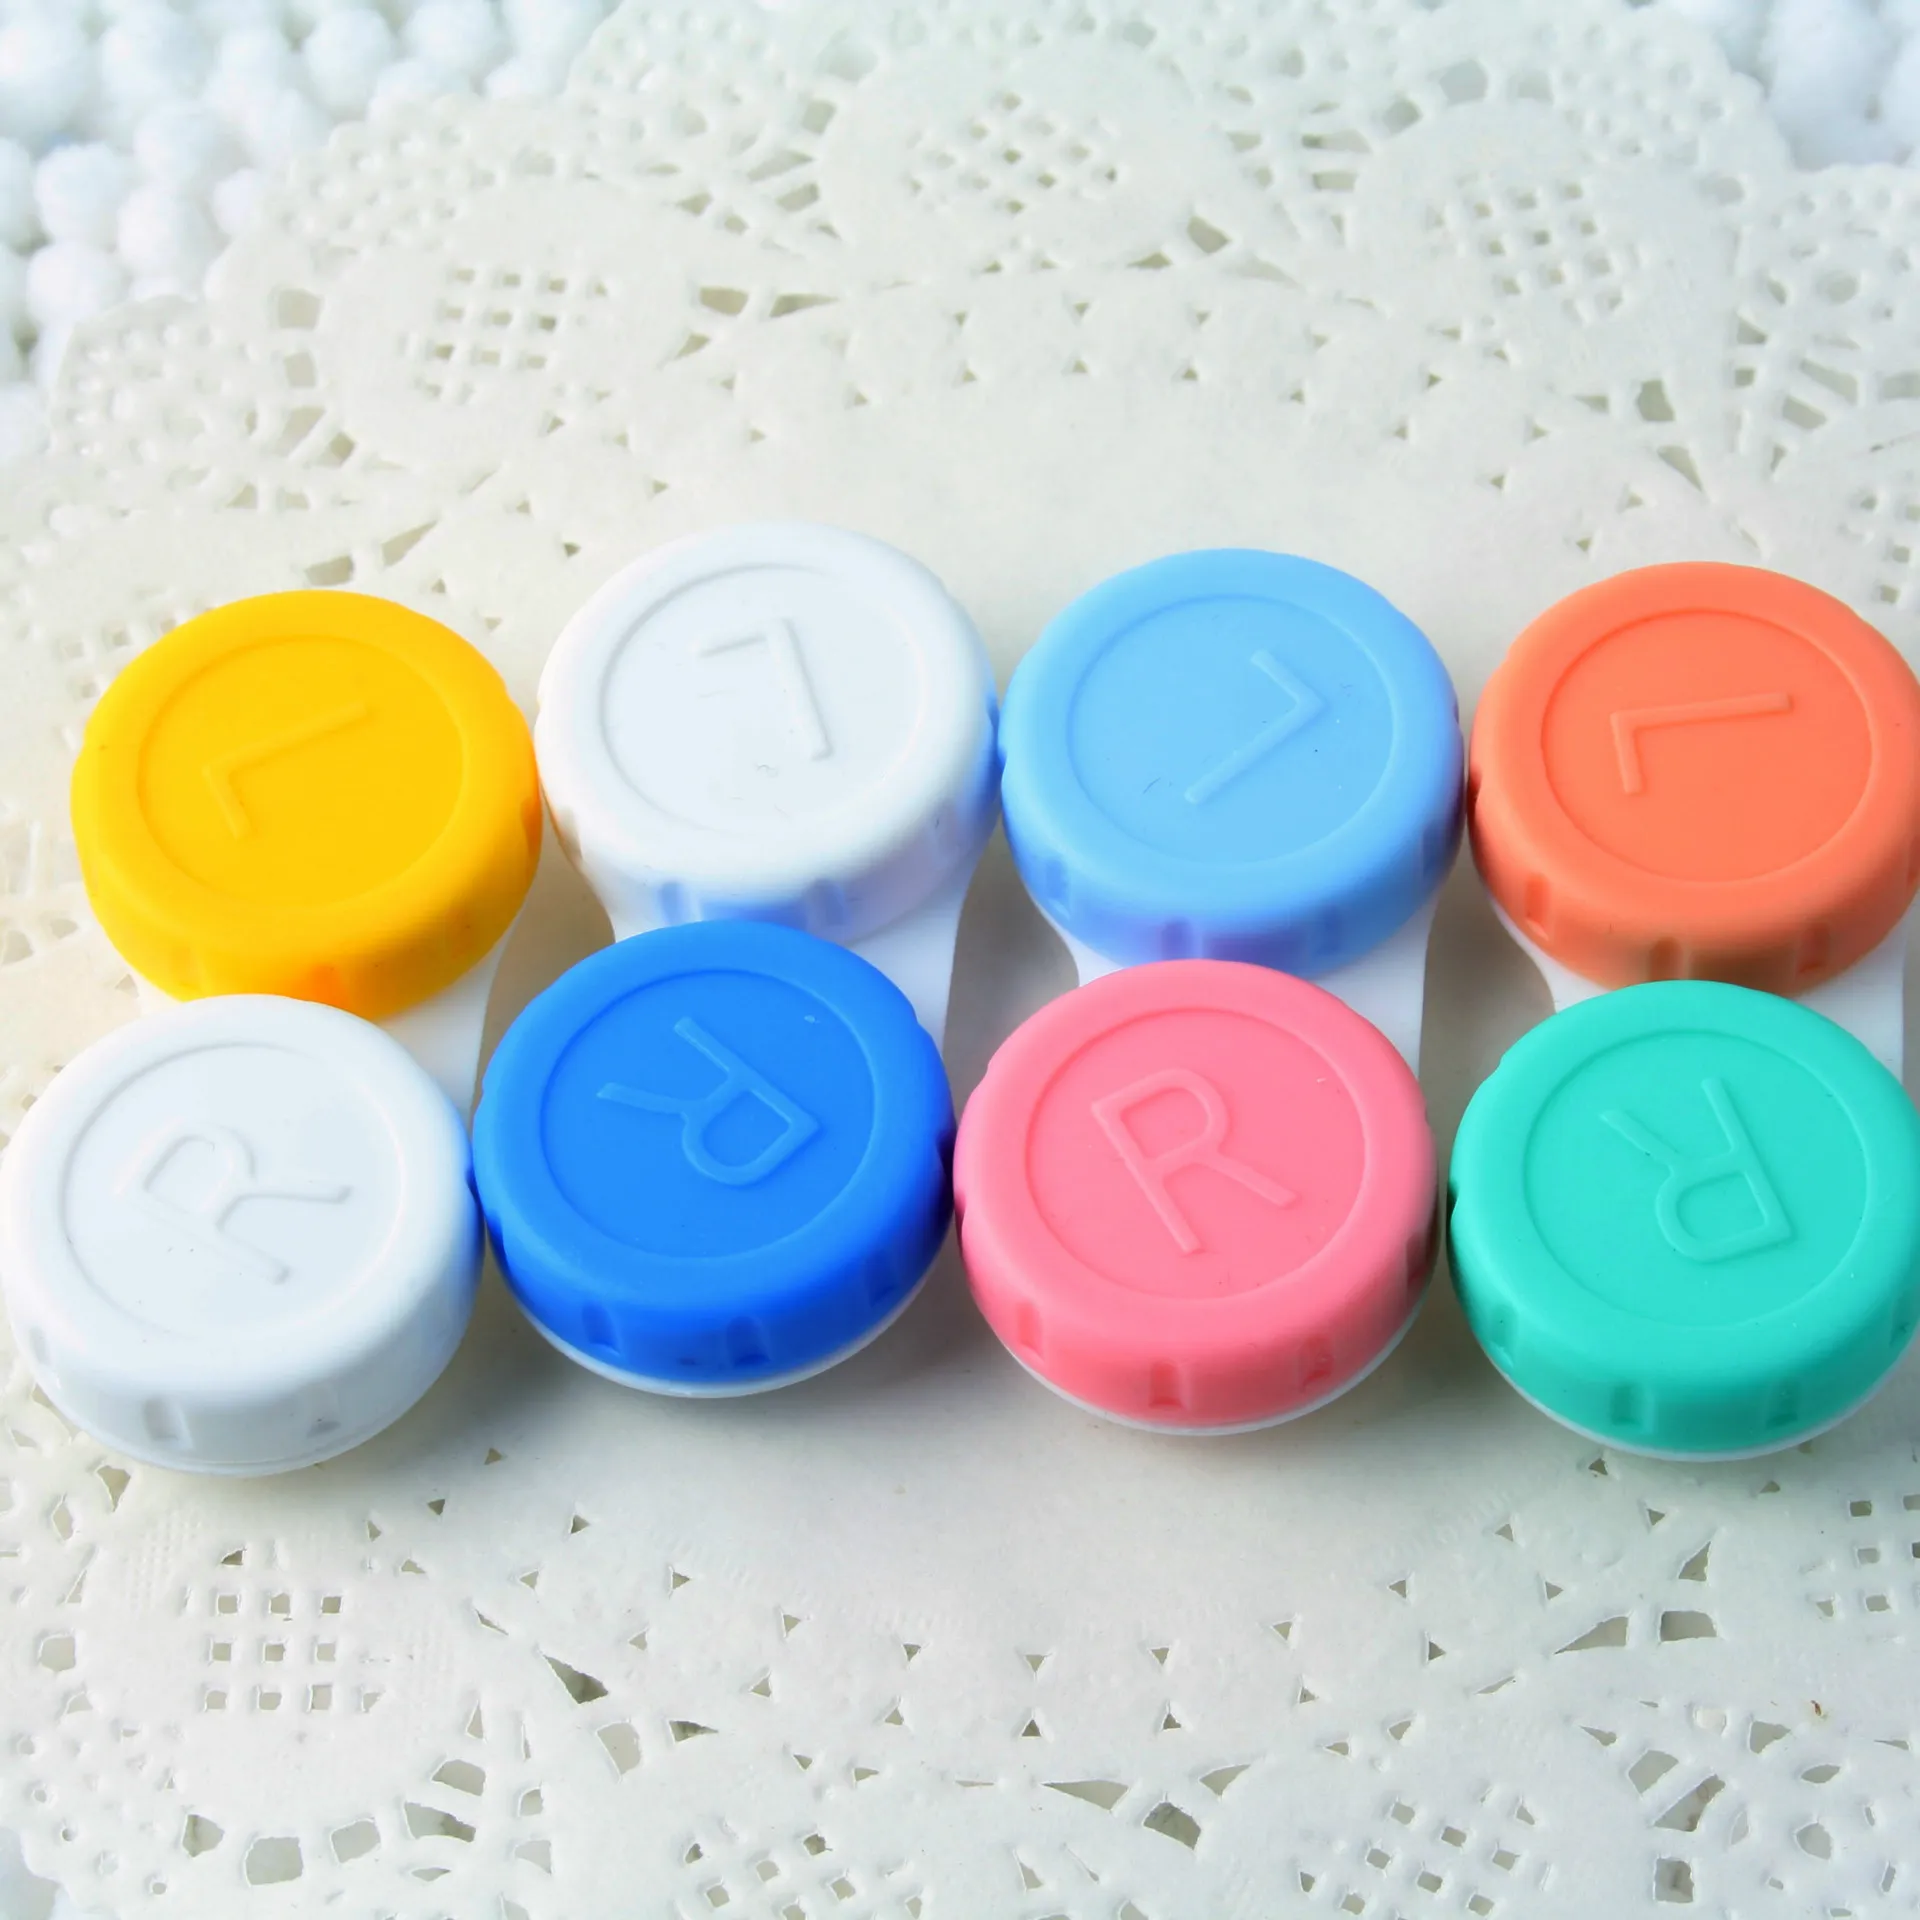 Tragbarer Mini-Kontaktlinsenbehälter aus Kunststoff für die Reise, Kontaktlinsenhalterbehälter mit Spiegel, einfach zu tragen für die Augenpflege